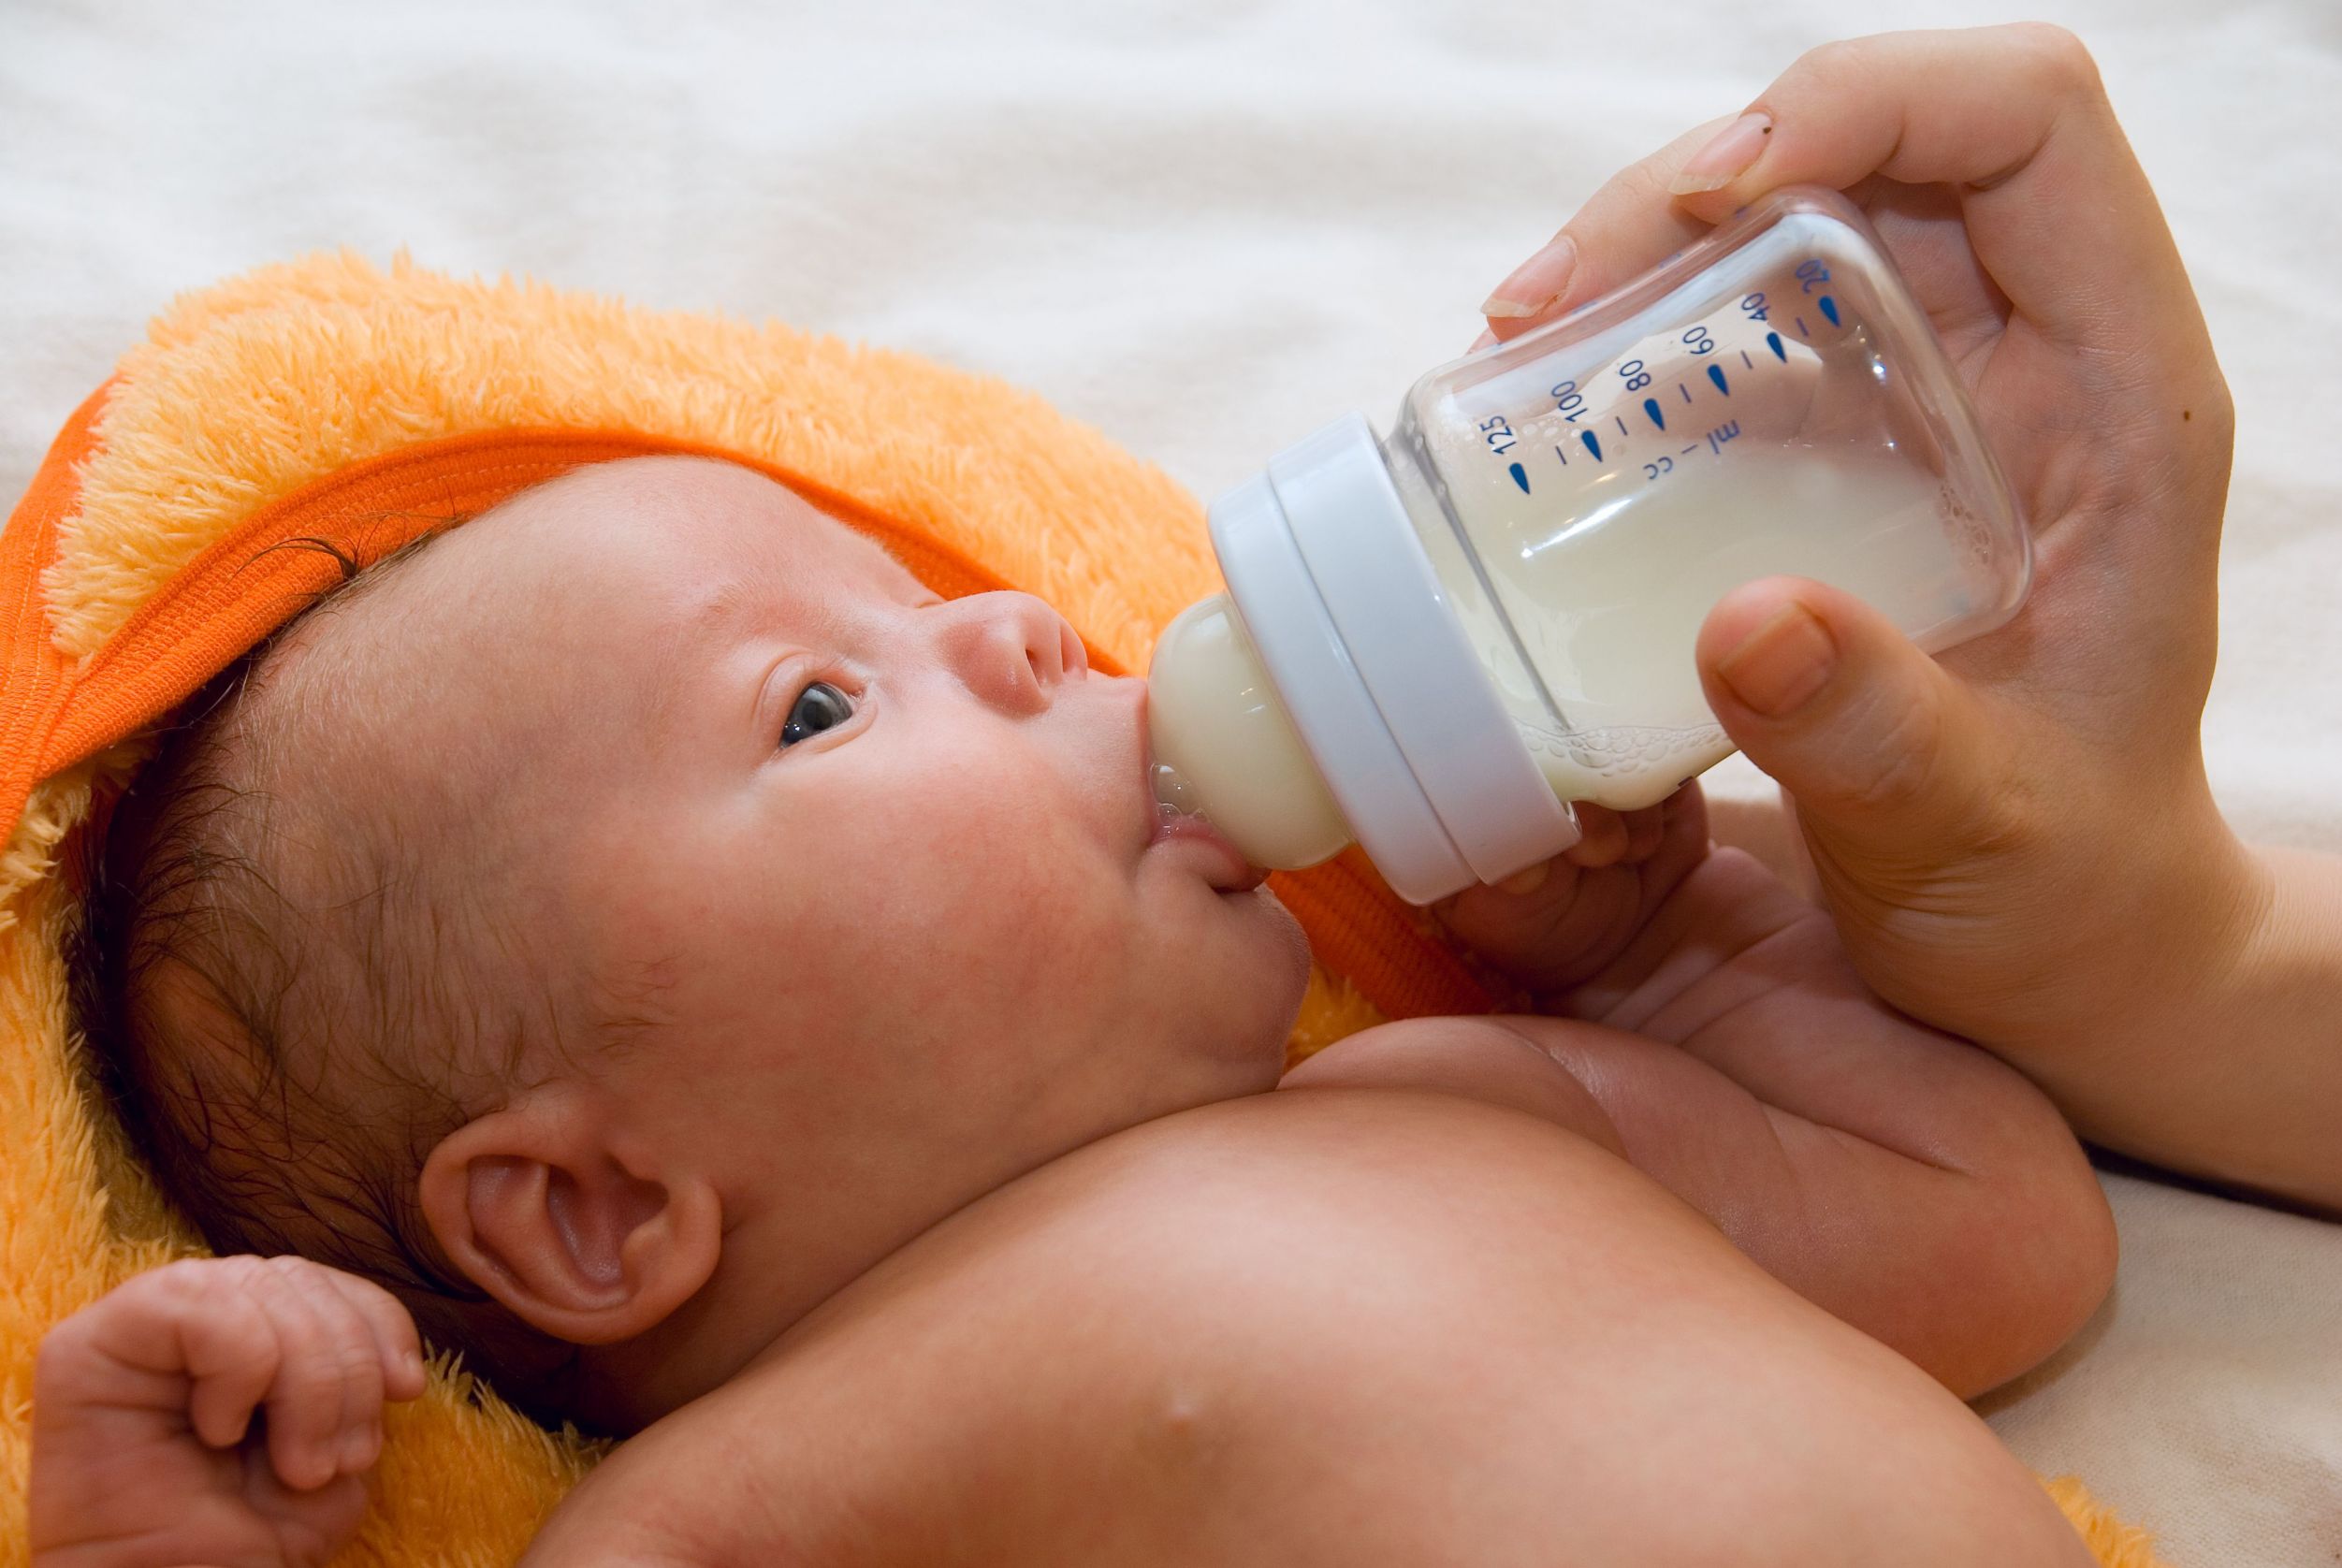 Смешанное вскармливание новорожденного: как правильно кормить?